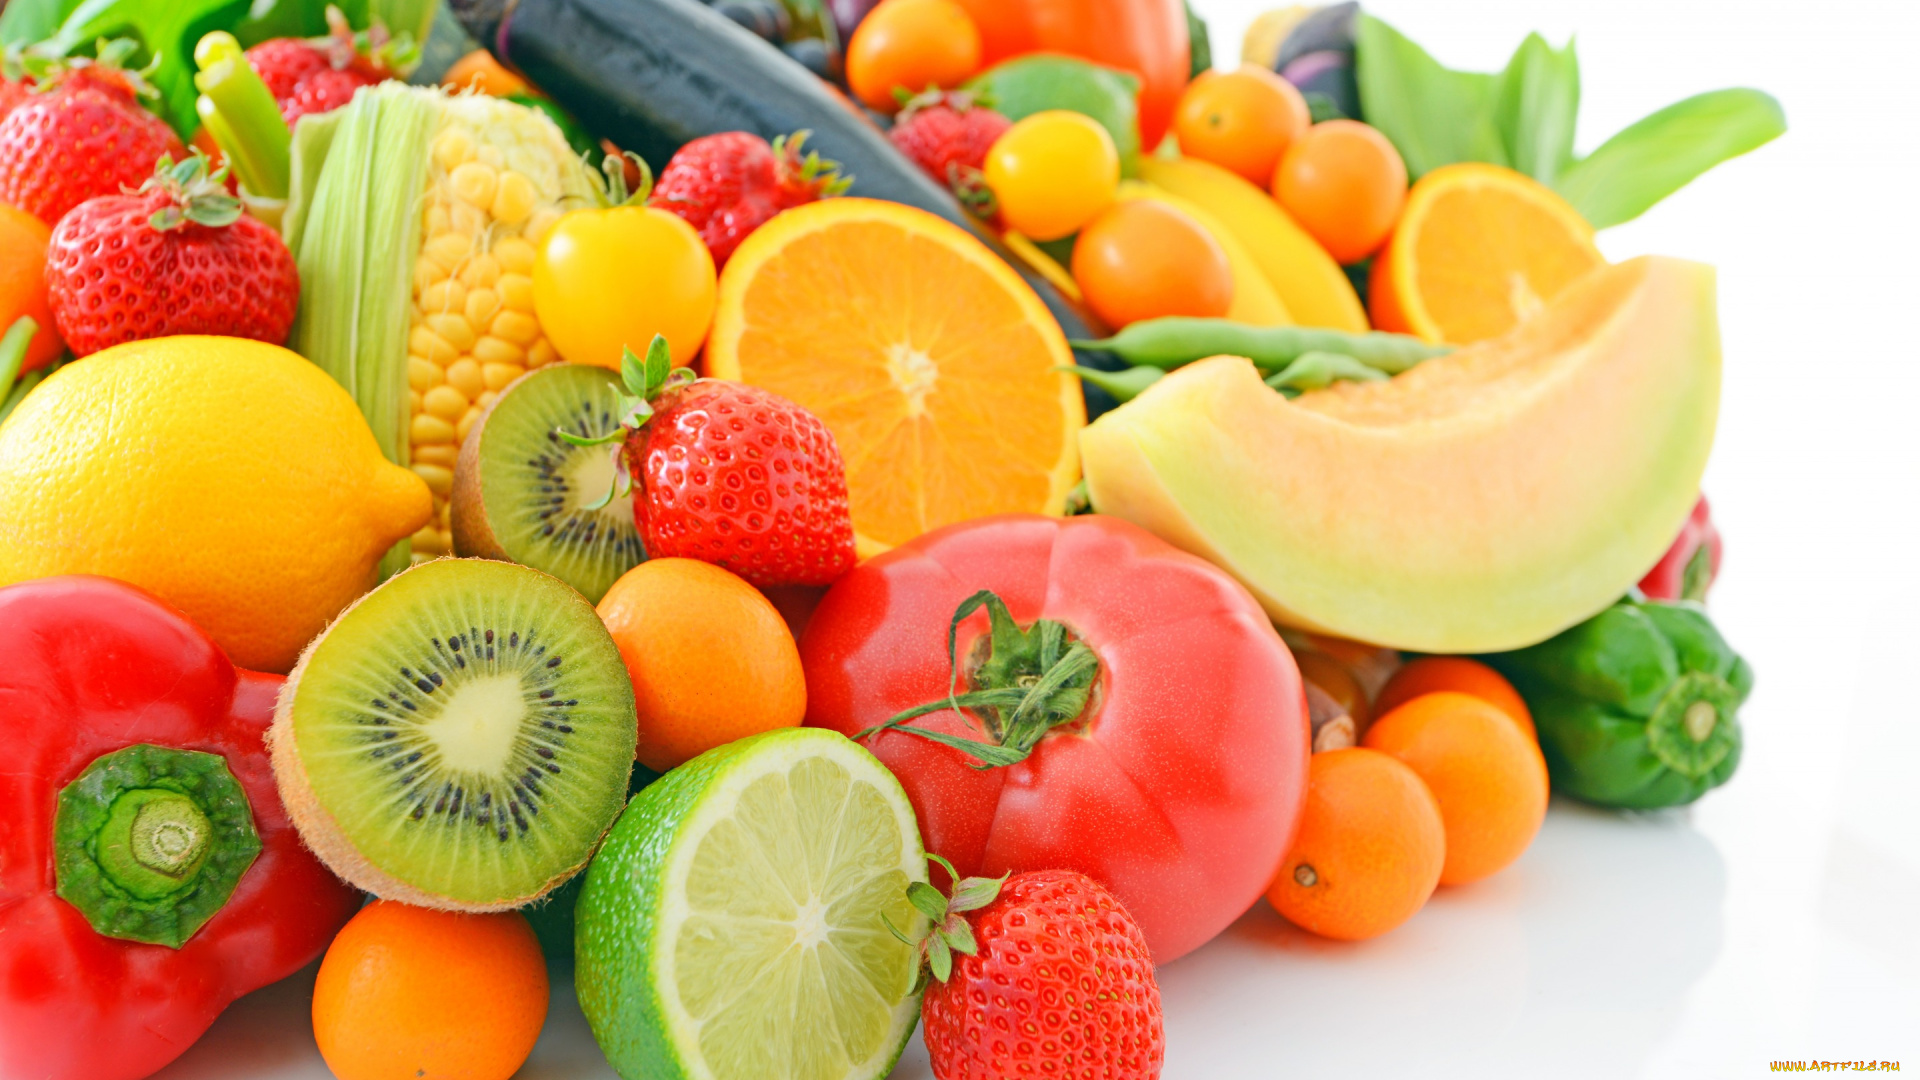 еда, фрукты, и, овощи, вместе, овощи, vegetables, berries, fruits, fresh, фрукты, ягоды, цитрусы, киви